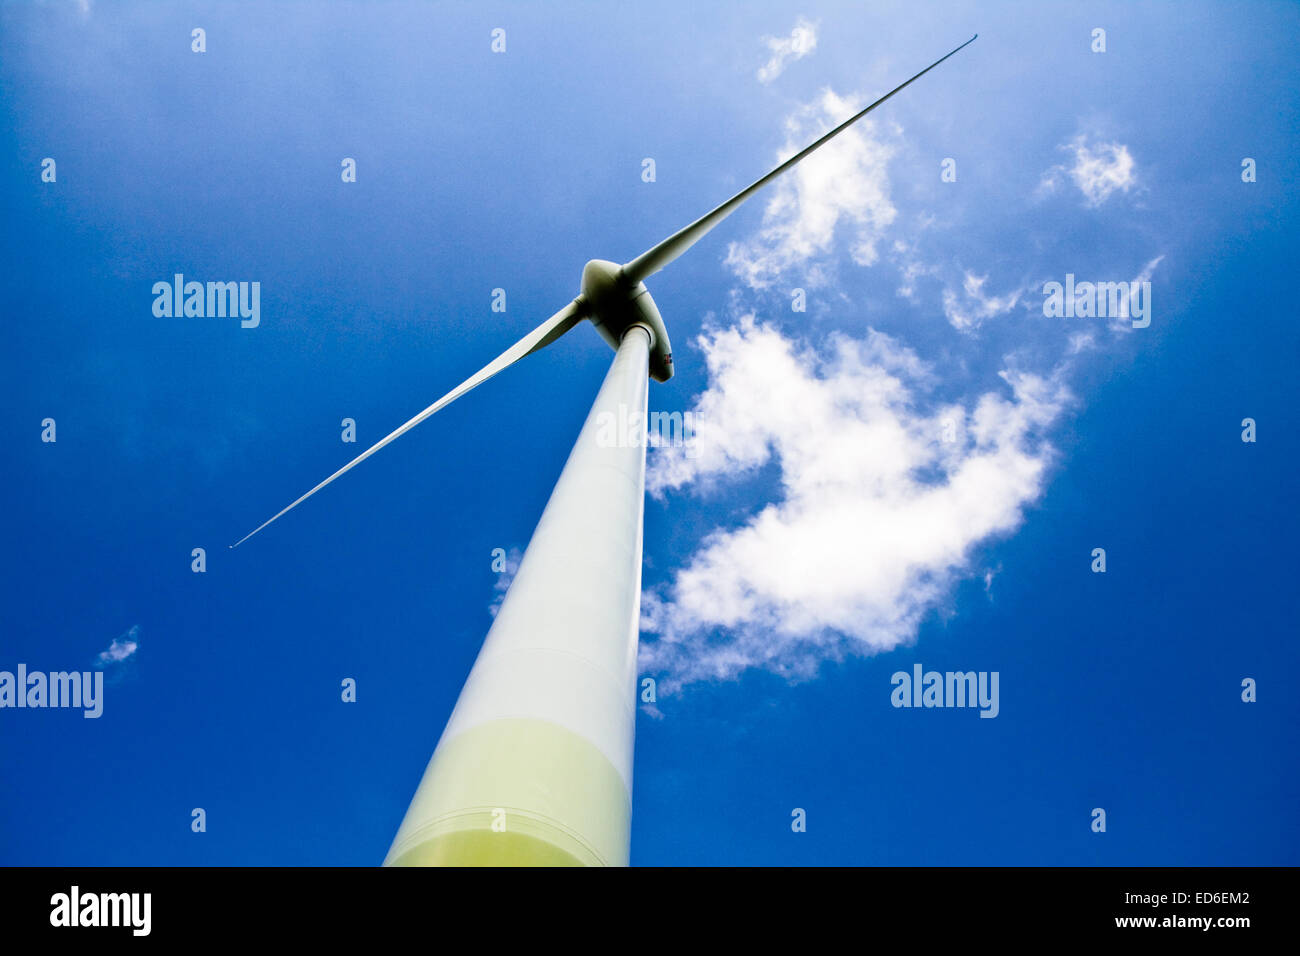 Mulino a vento contro un cielo blu e nuvole, fonte di energia alternativa, nel telaio orizzontale Foto Stock